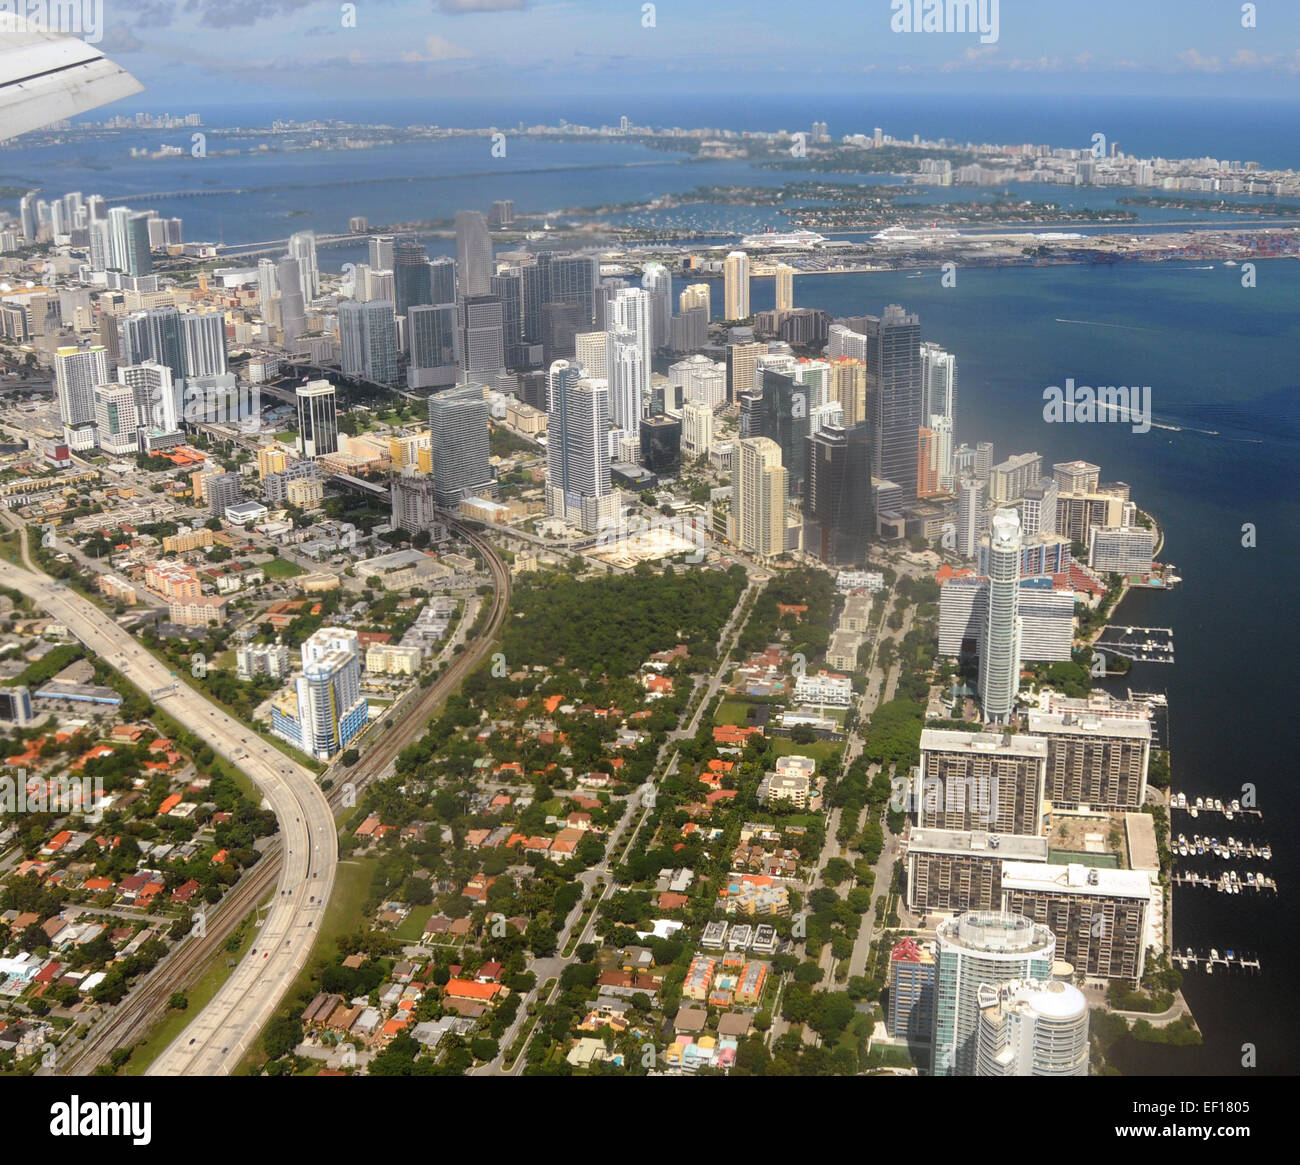 Le centre-ville de Miami, Floride, vue aérienne d'avion Banque D'Images